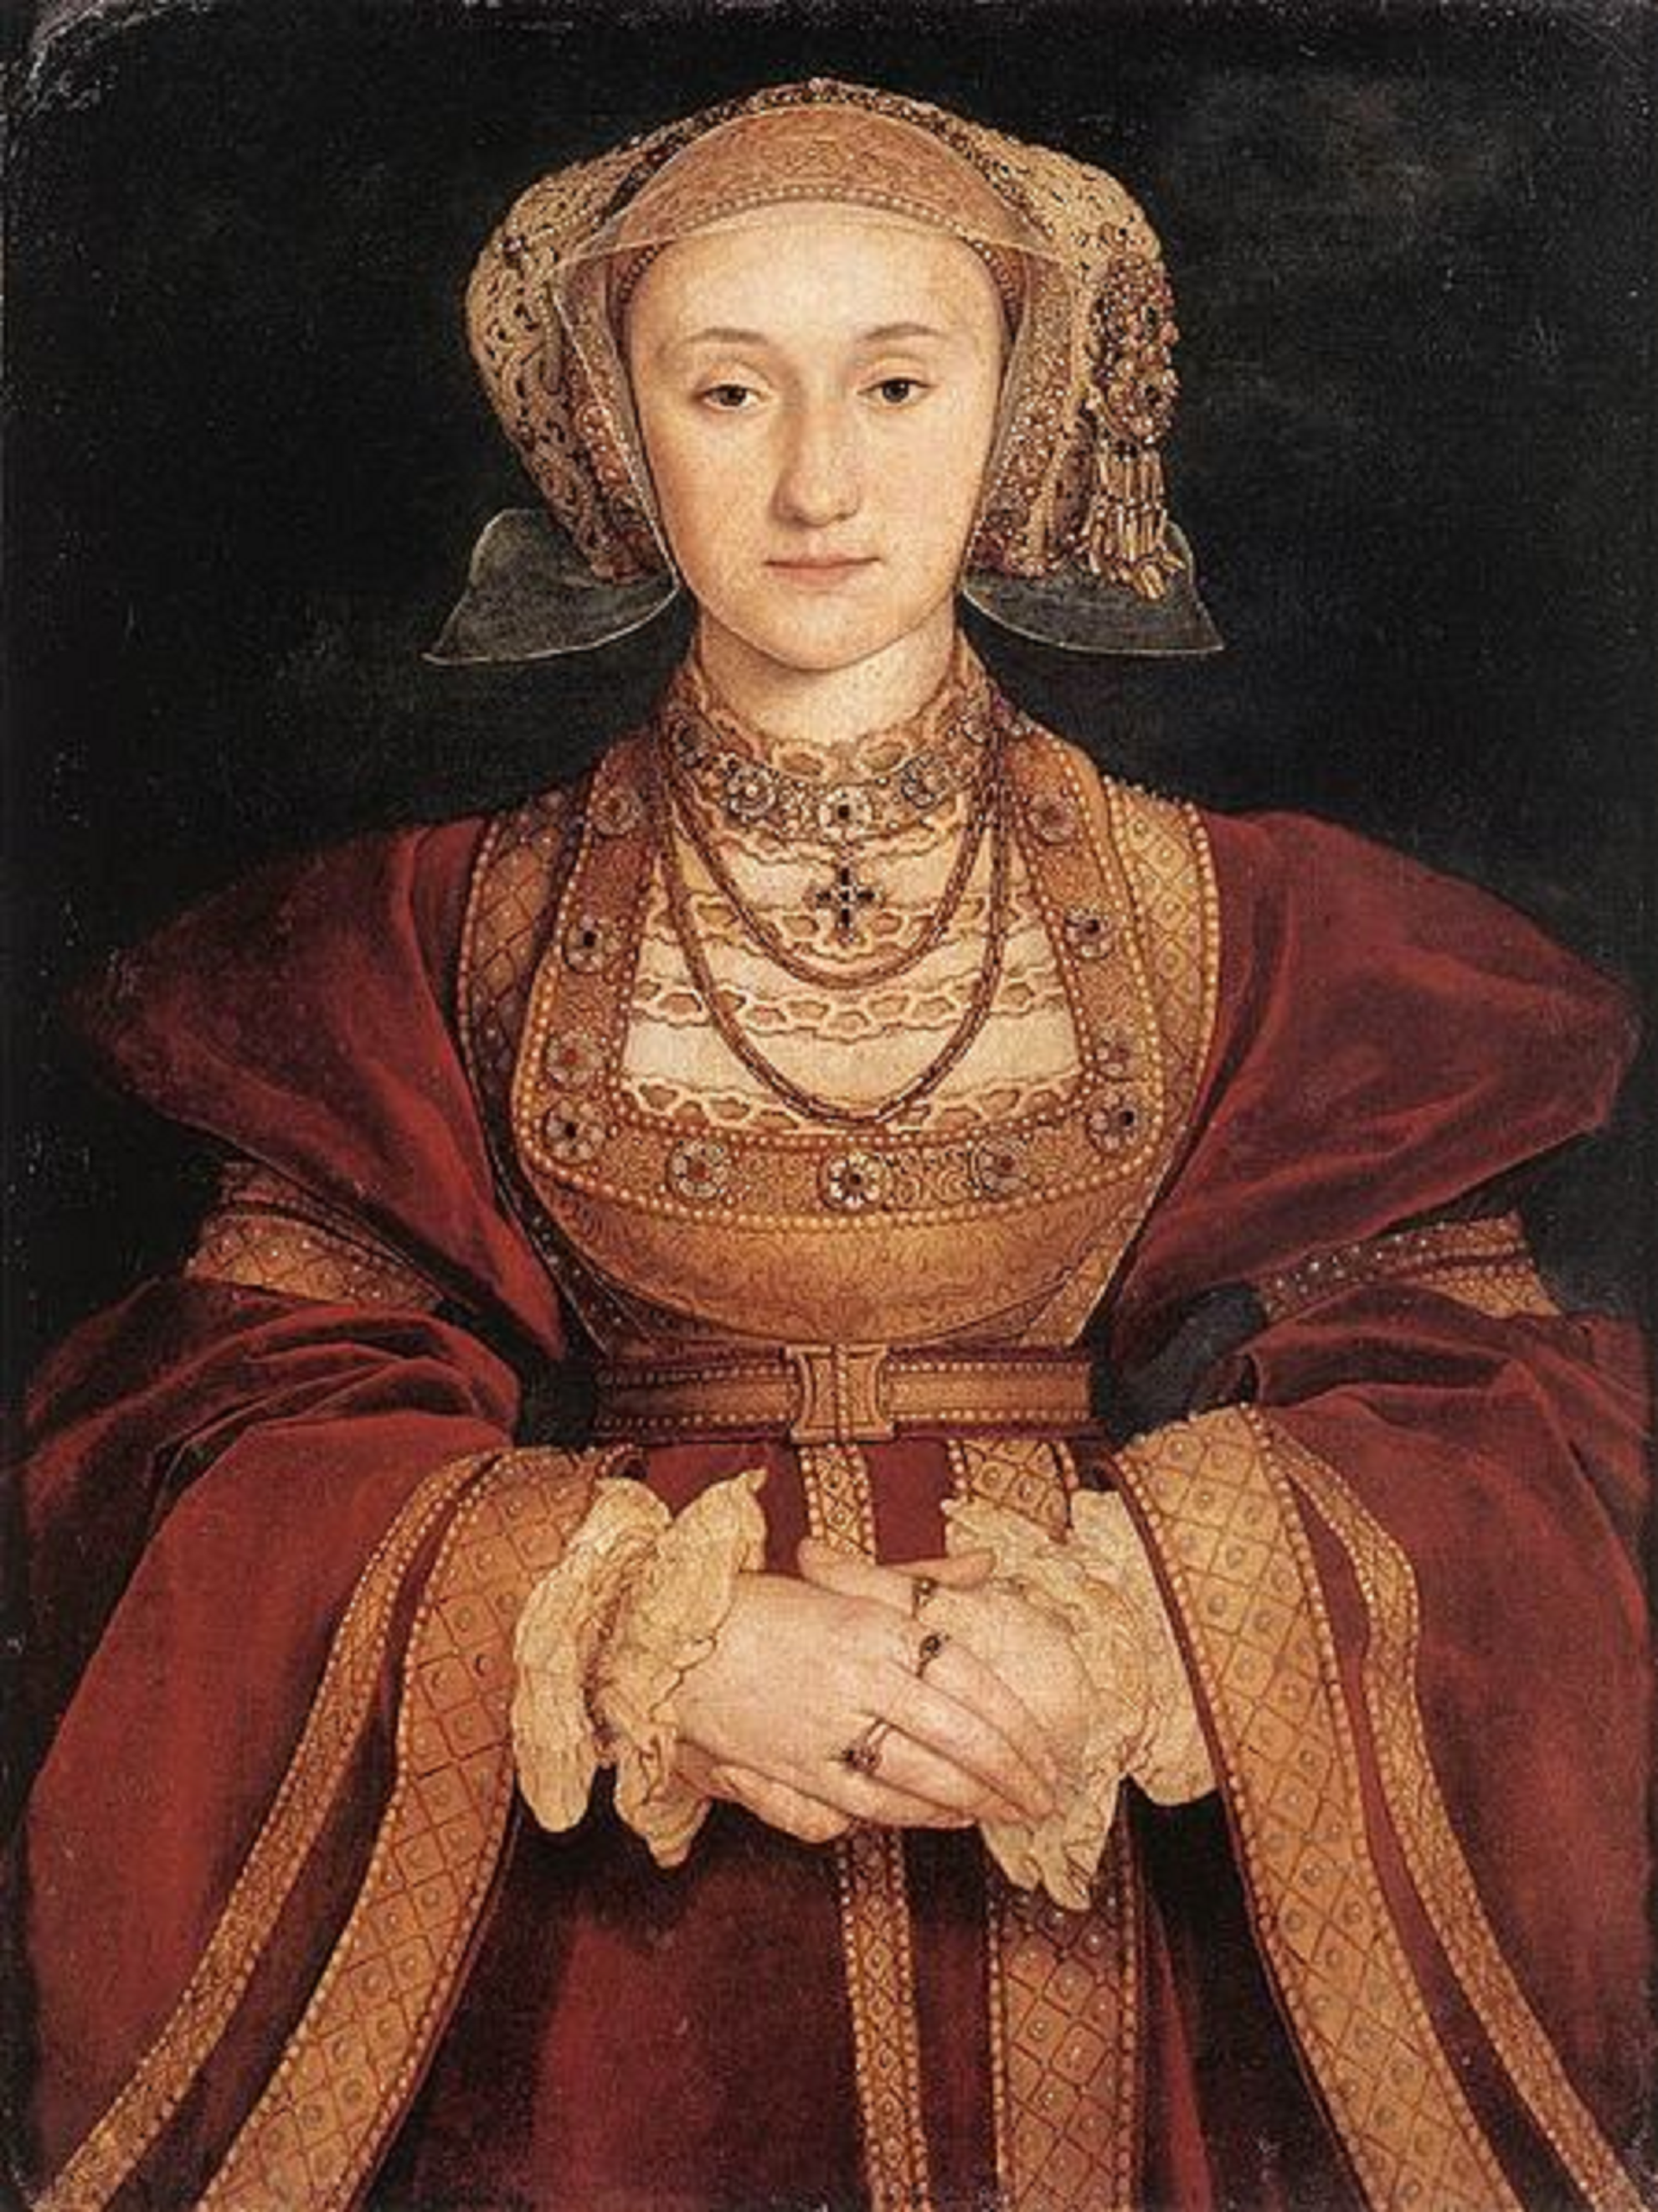 Neix Anna de Cleves, la connexió Urgell amb la casa reial anglesa